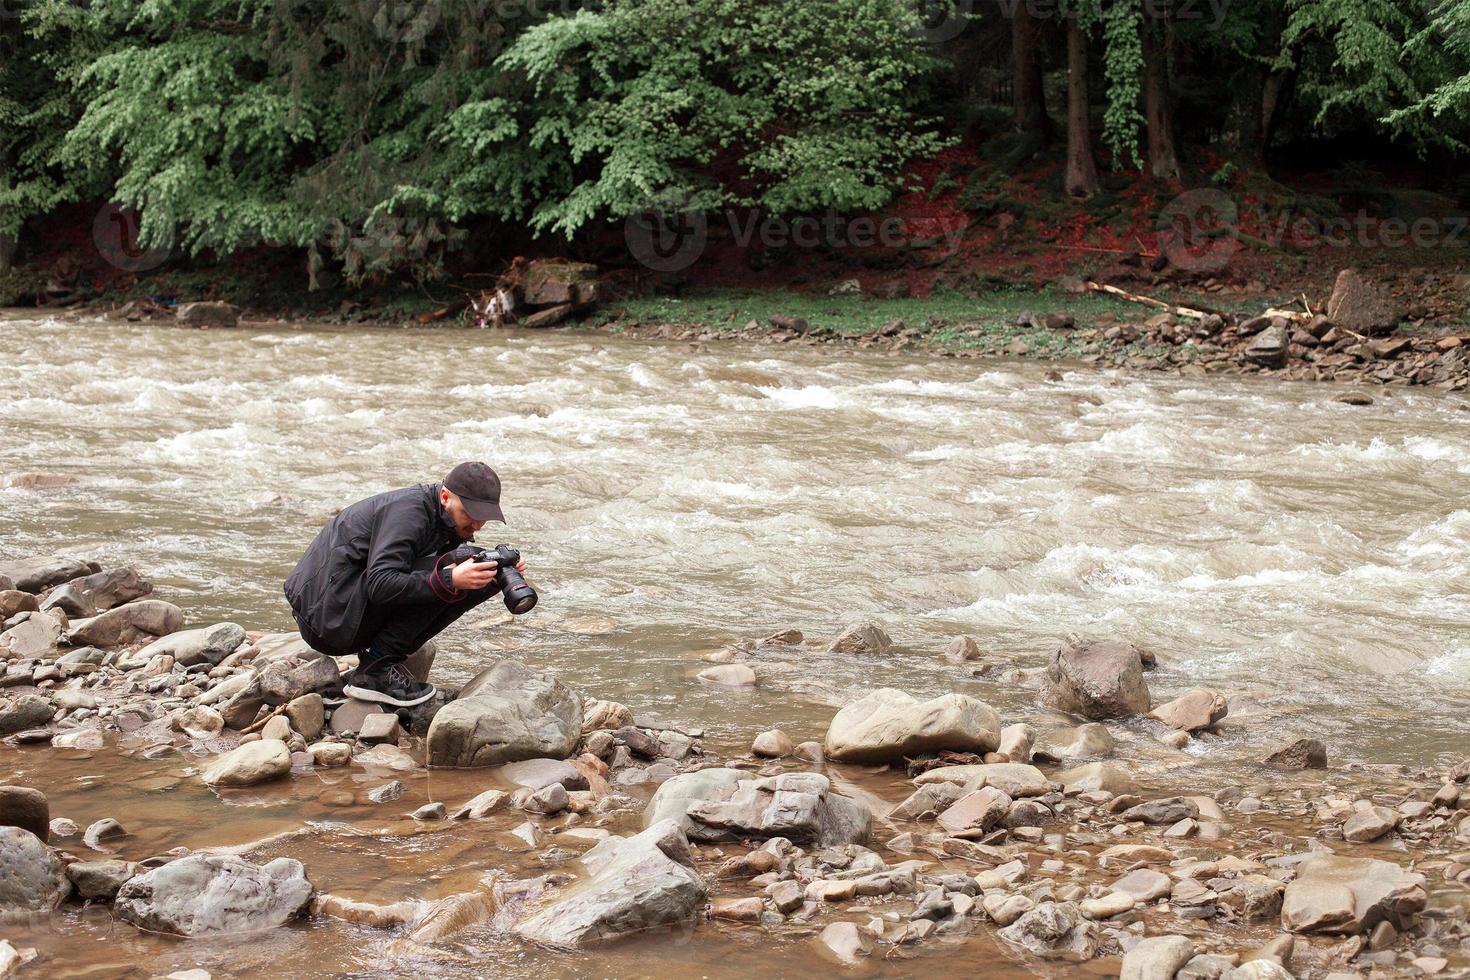 fotografo prende immagini di ruvido fiume foto